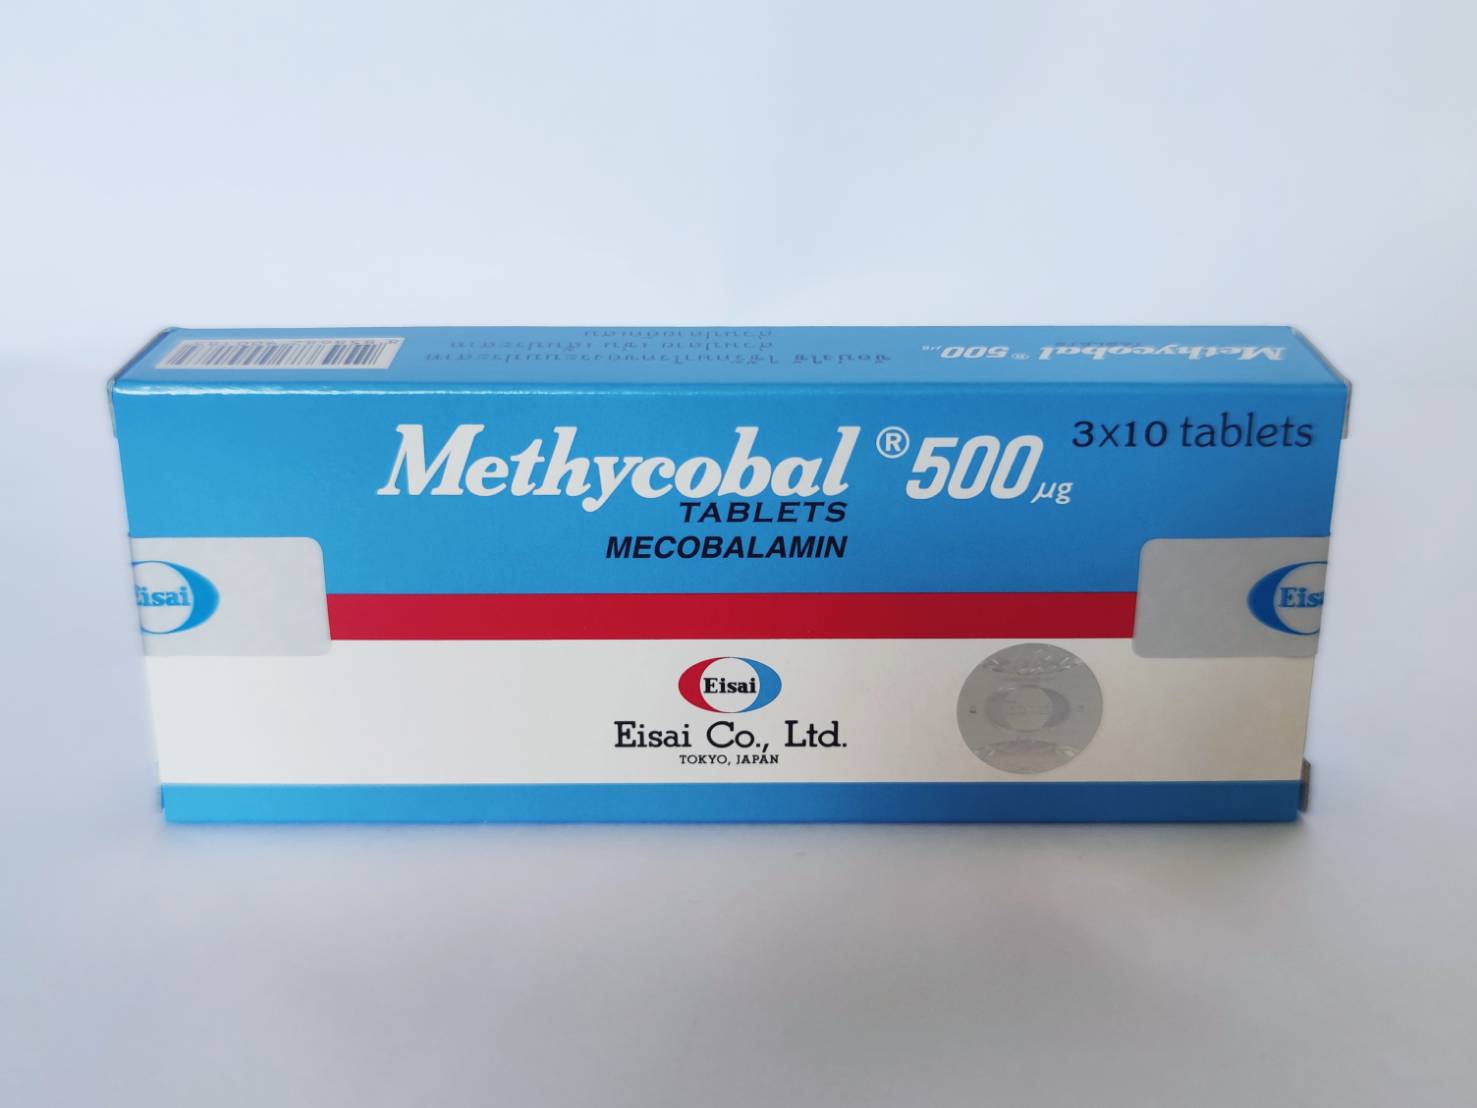 เมทิลโคบอล เมโคบาลามิน500ไมโครกรัม Methylcobal 30เม็ด/กล่อง